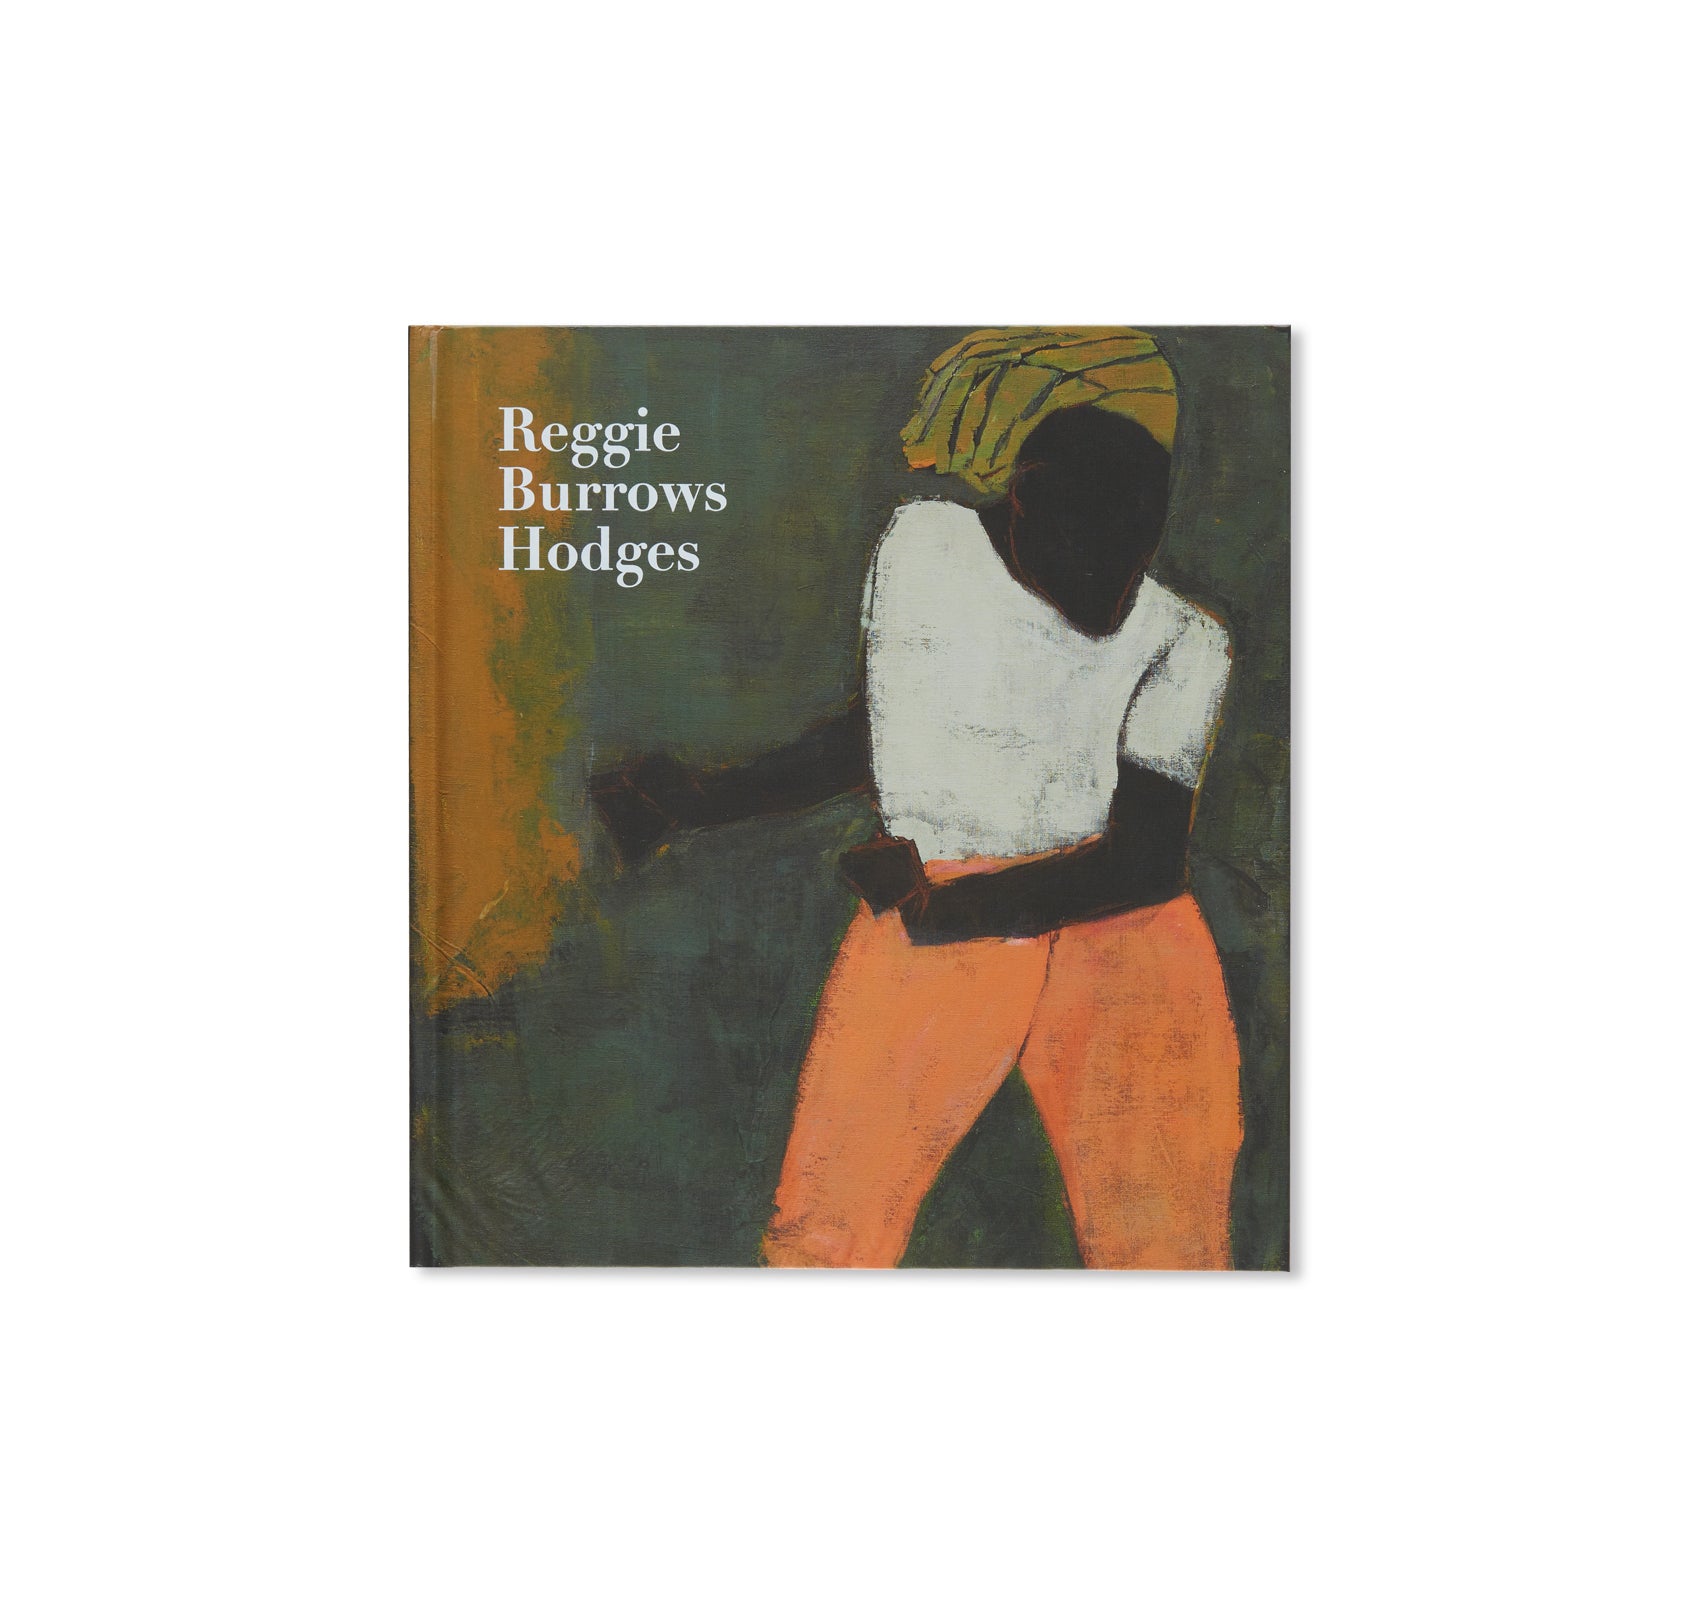 REGGIE BURROWS HODGES by Reggie Burrows Hodges